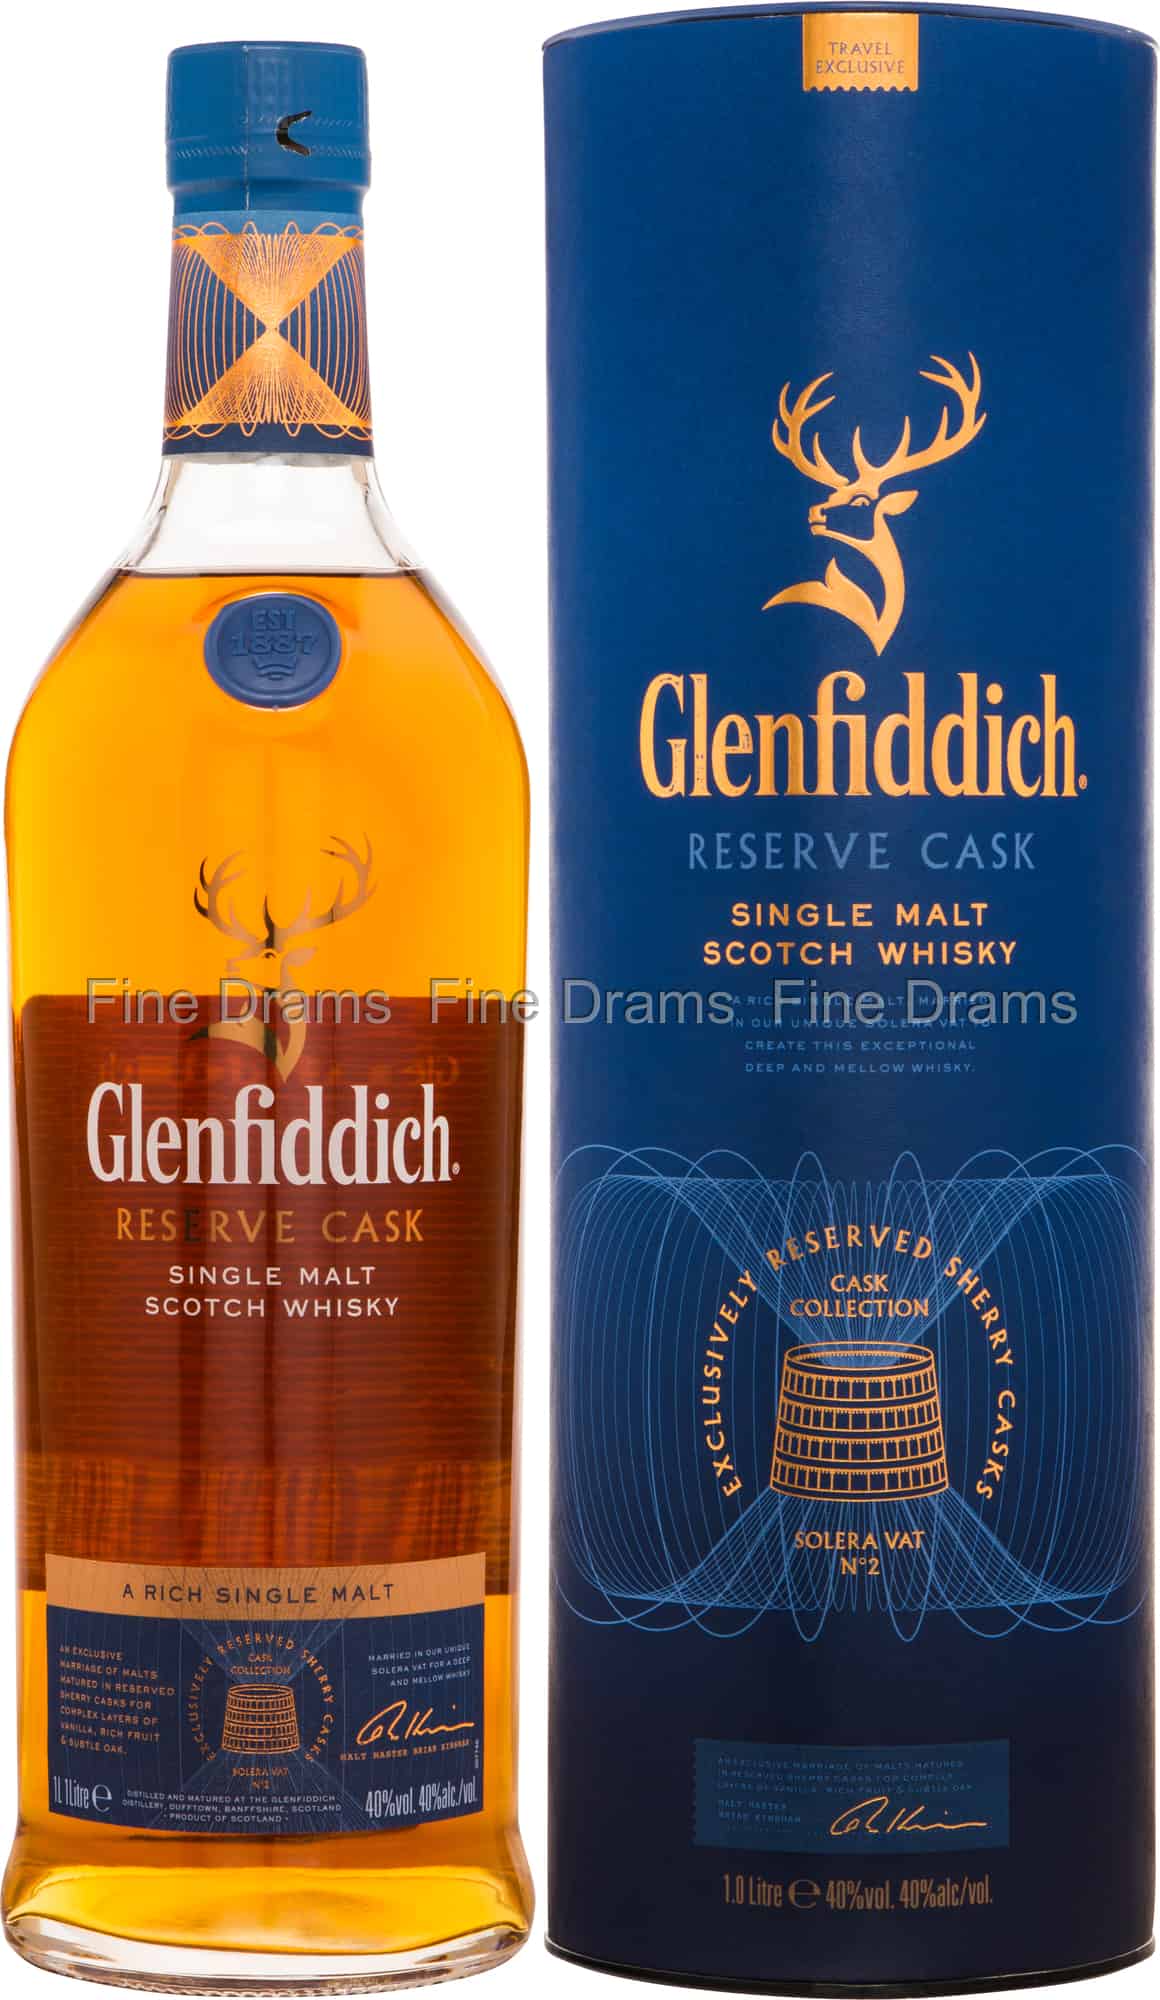 Glenfiddich Reserve Cask 1 Liter Scotch Single Malt Whisky